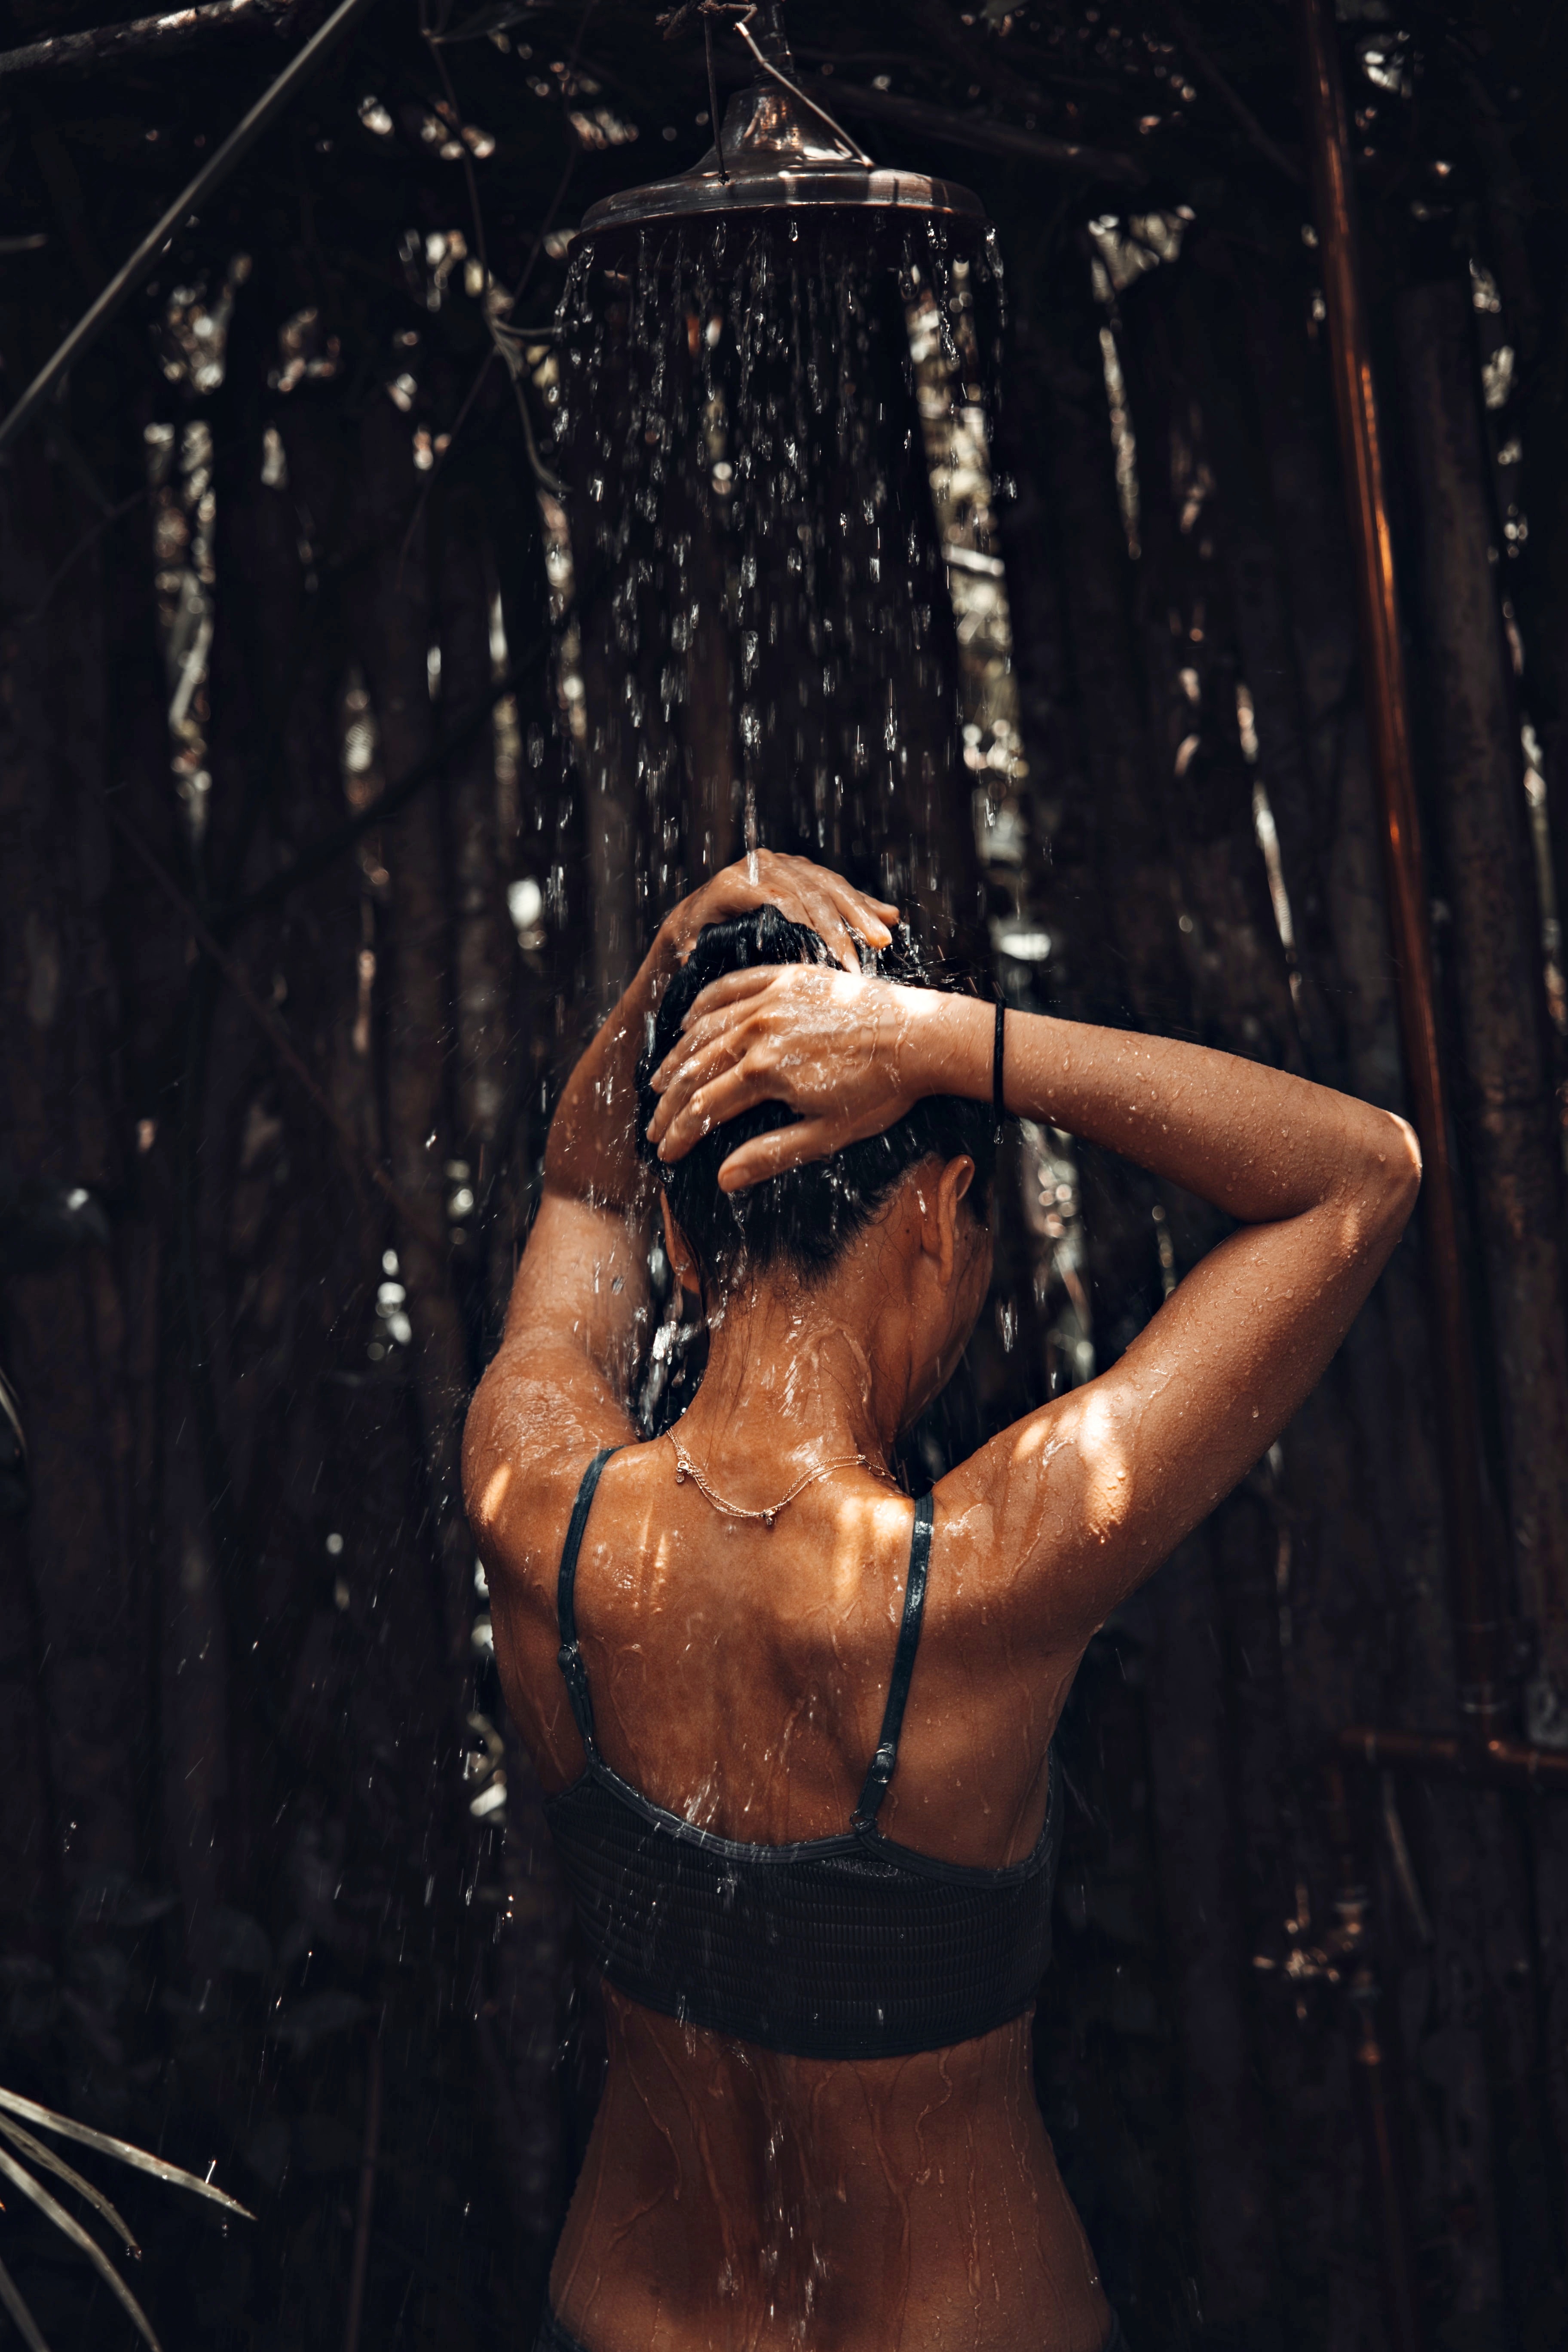 Körperwahrnehmung – Frau unter der Dusche mit dem Rücken zur Kamera